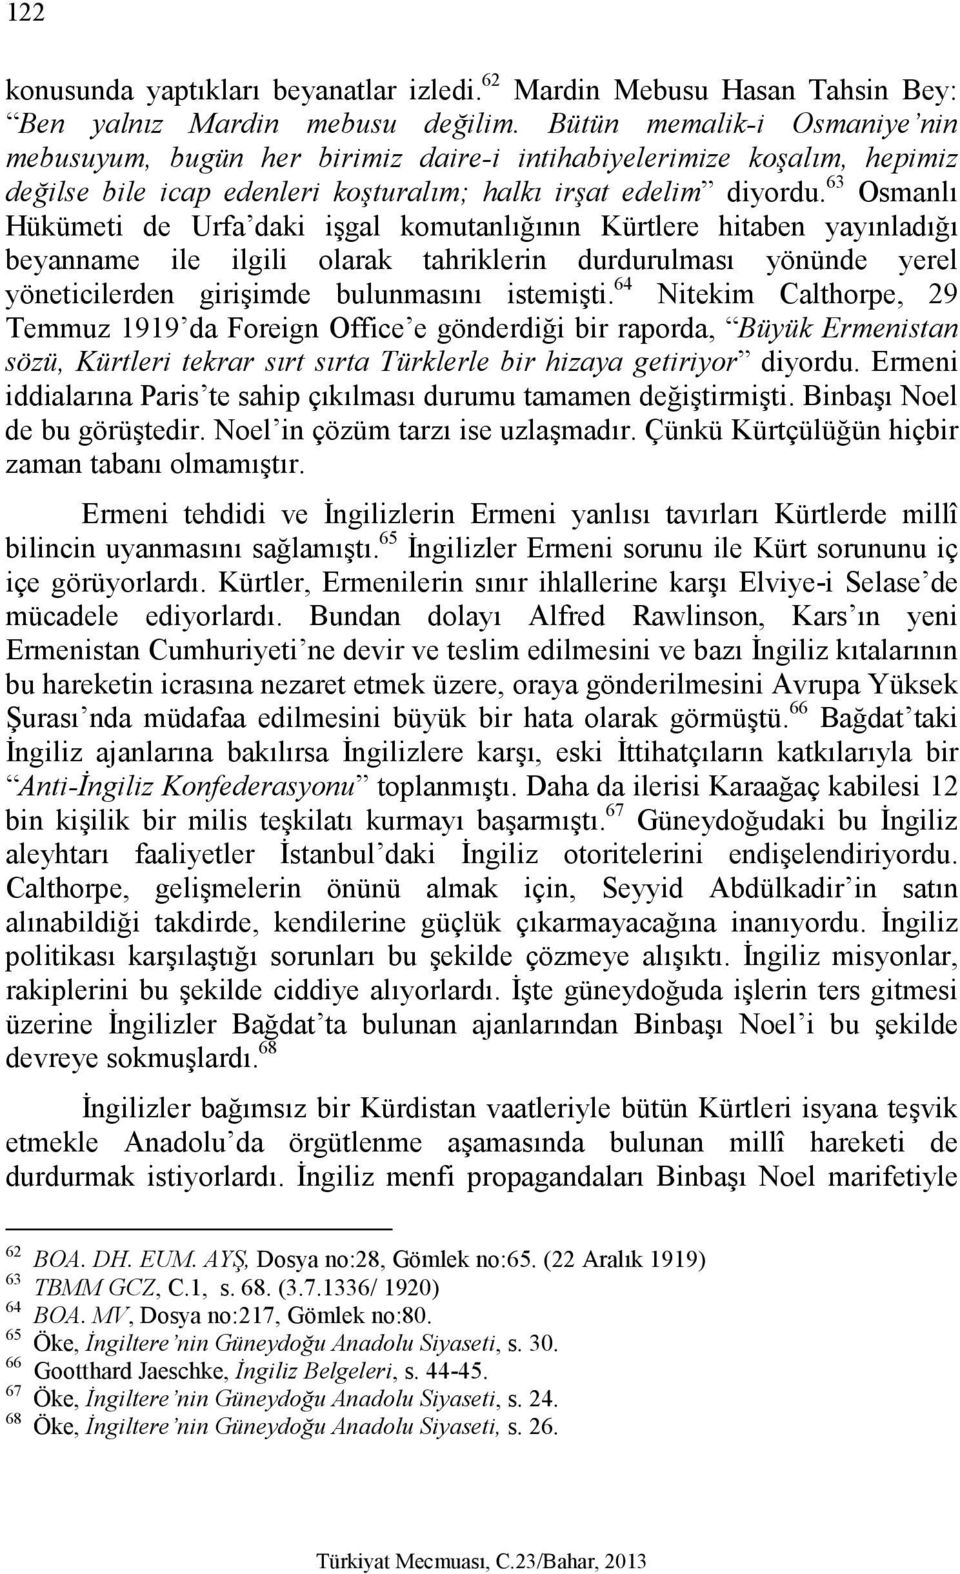 63 Osmanlı Hükümeti de Urfa daki işgal komutanlığının Kürtlere hitaben yayınladığı beyanname ile ilgili olarak tahriklerin durdurulması yönünde yerel yöneticilerden girişimde bulunmasını istemişti.